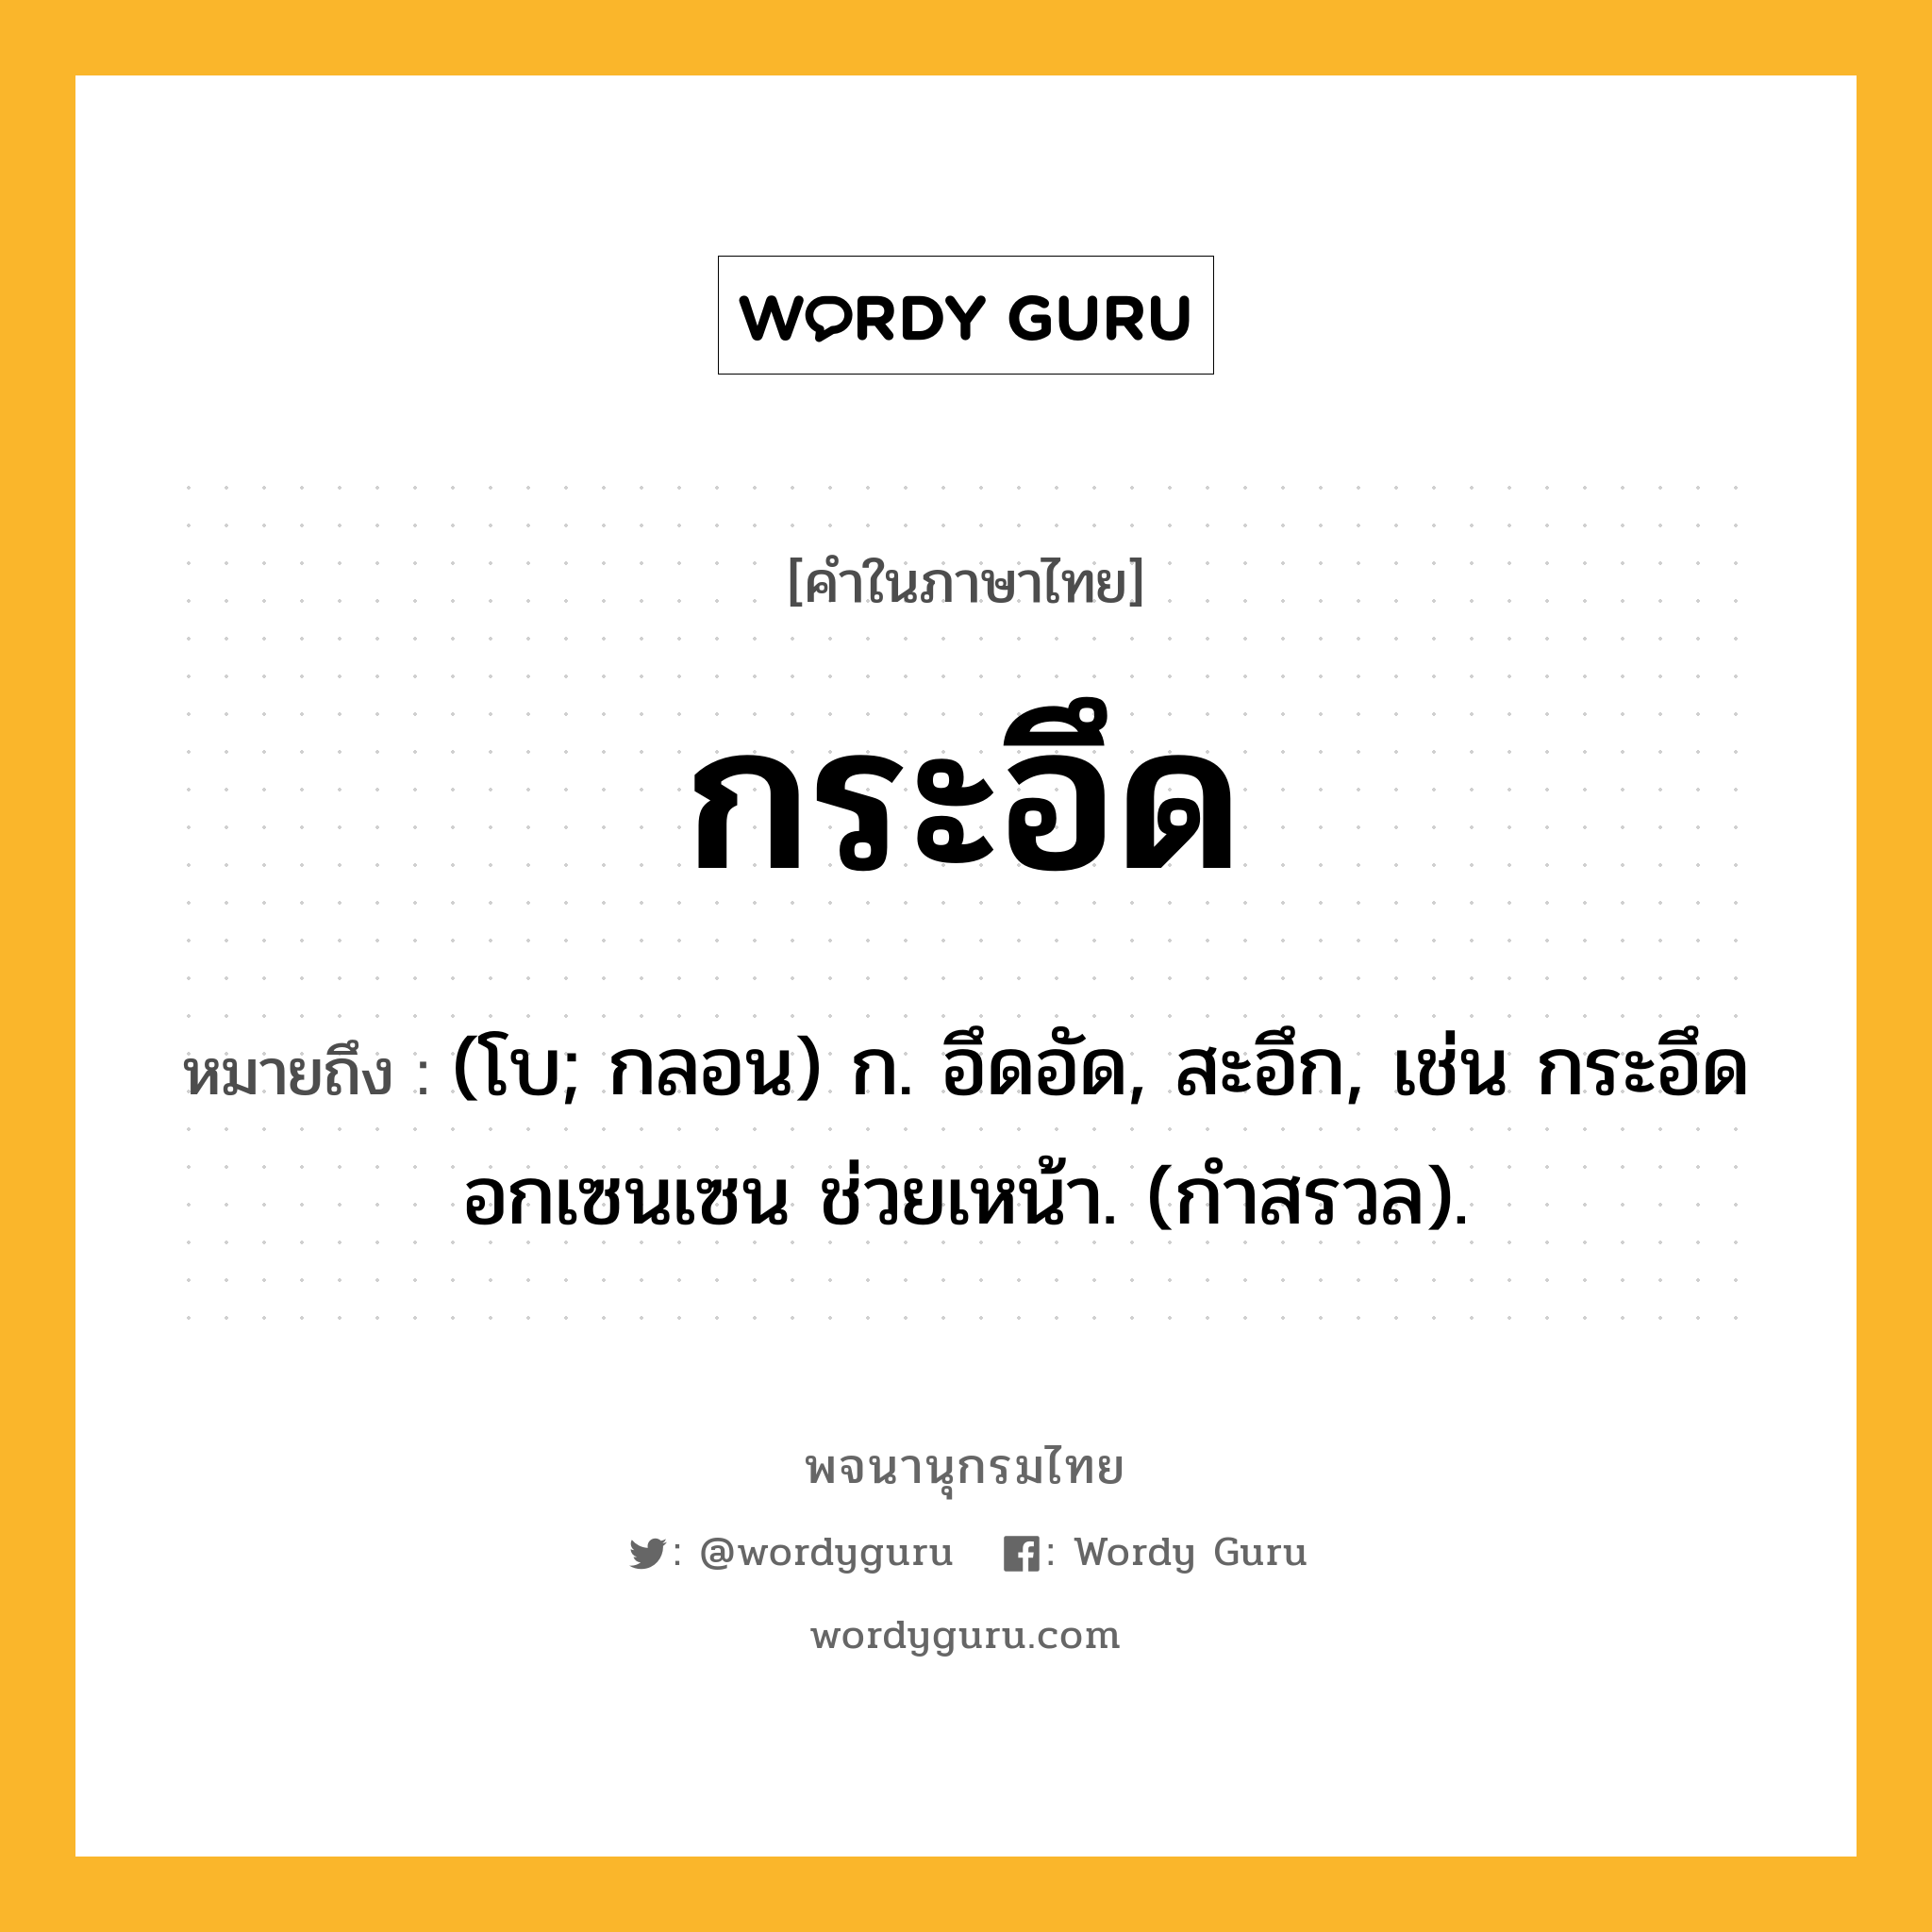 กระอึด หมายถึงอะไร?, คำในภาษาไทย กระอึด หมายถึง (โบ; กลอน) ก. อึดอัด, สะอึก, เช่น กระอึดอกเซนเซน ช่วยเหน้า. (กําสรวล).